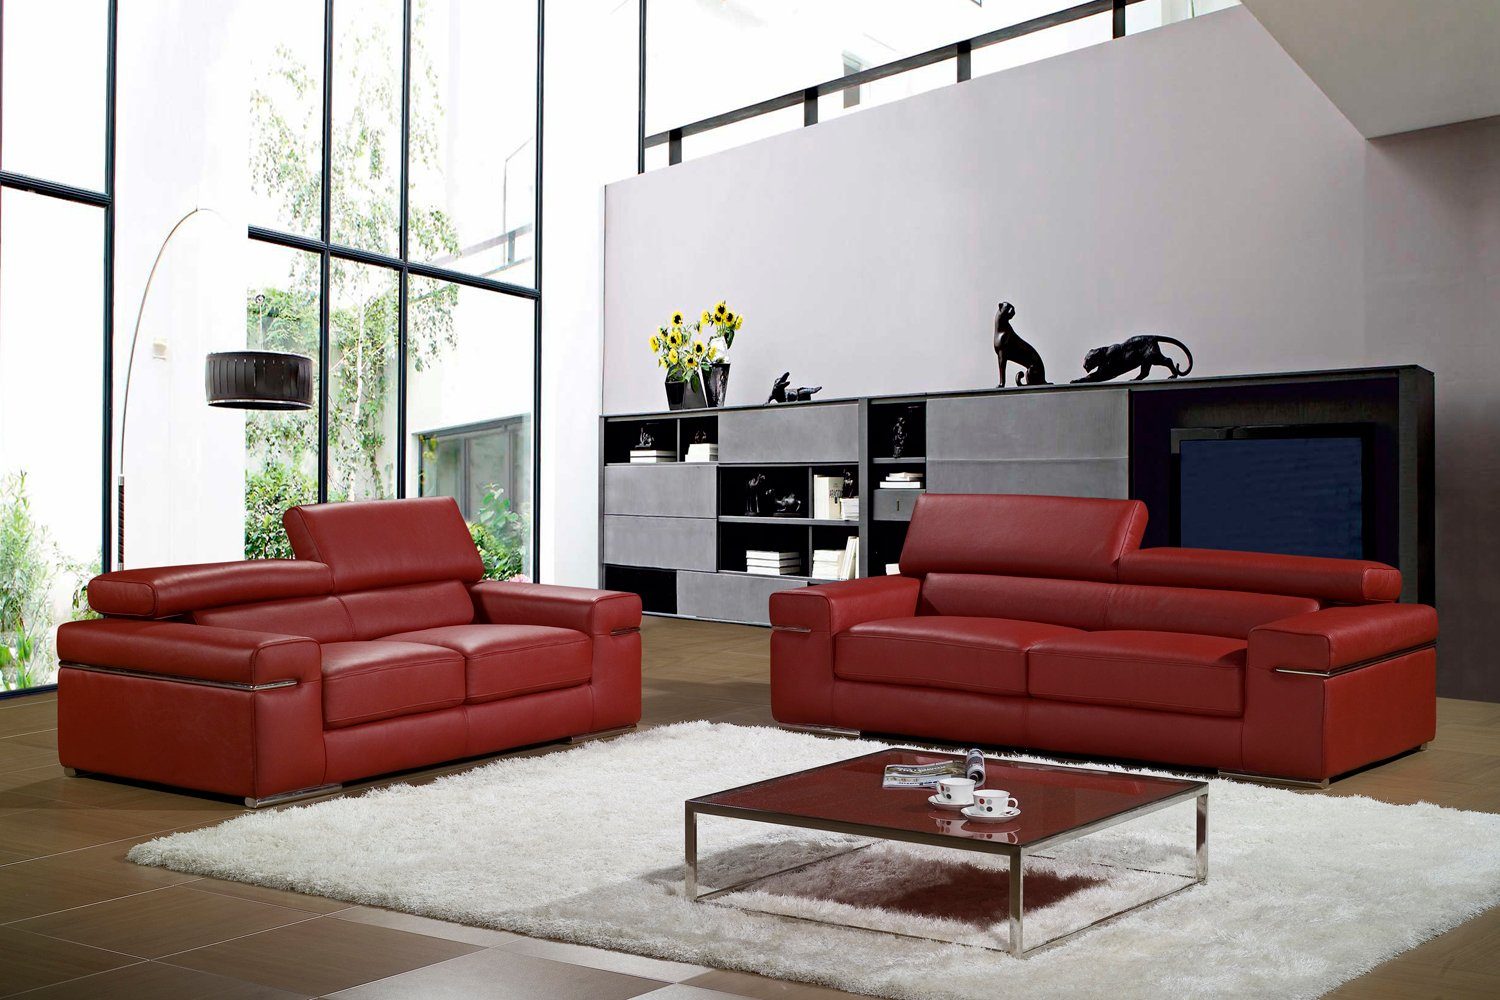 JVmoebel Neu, Made Europe Couchgarnitur Möbel Polster Weiße 3+2+1 Design Sofa luxus in Sofas